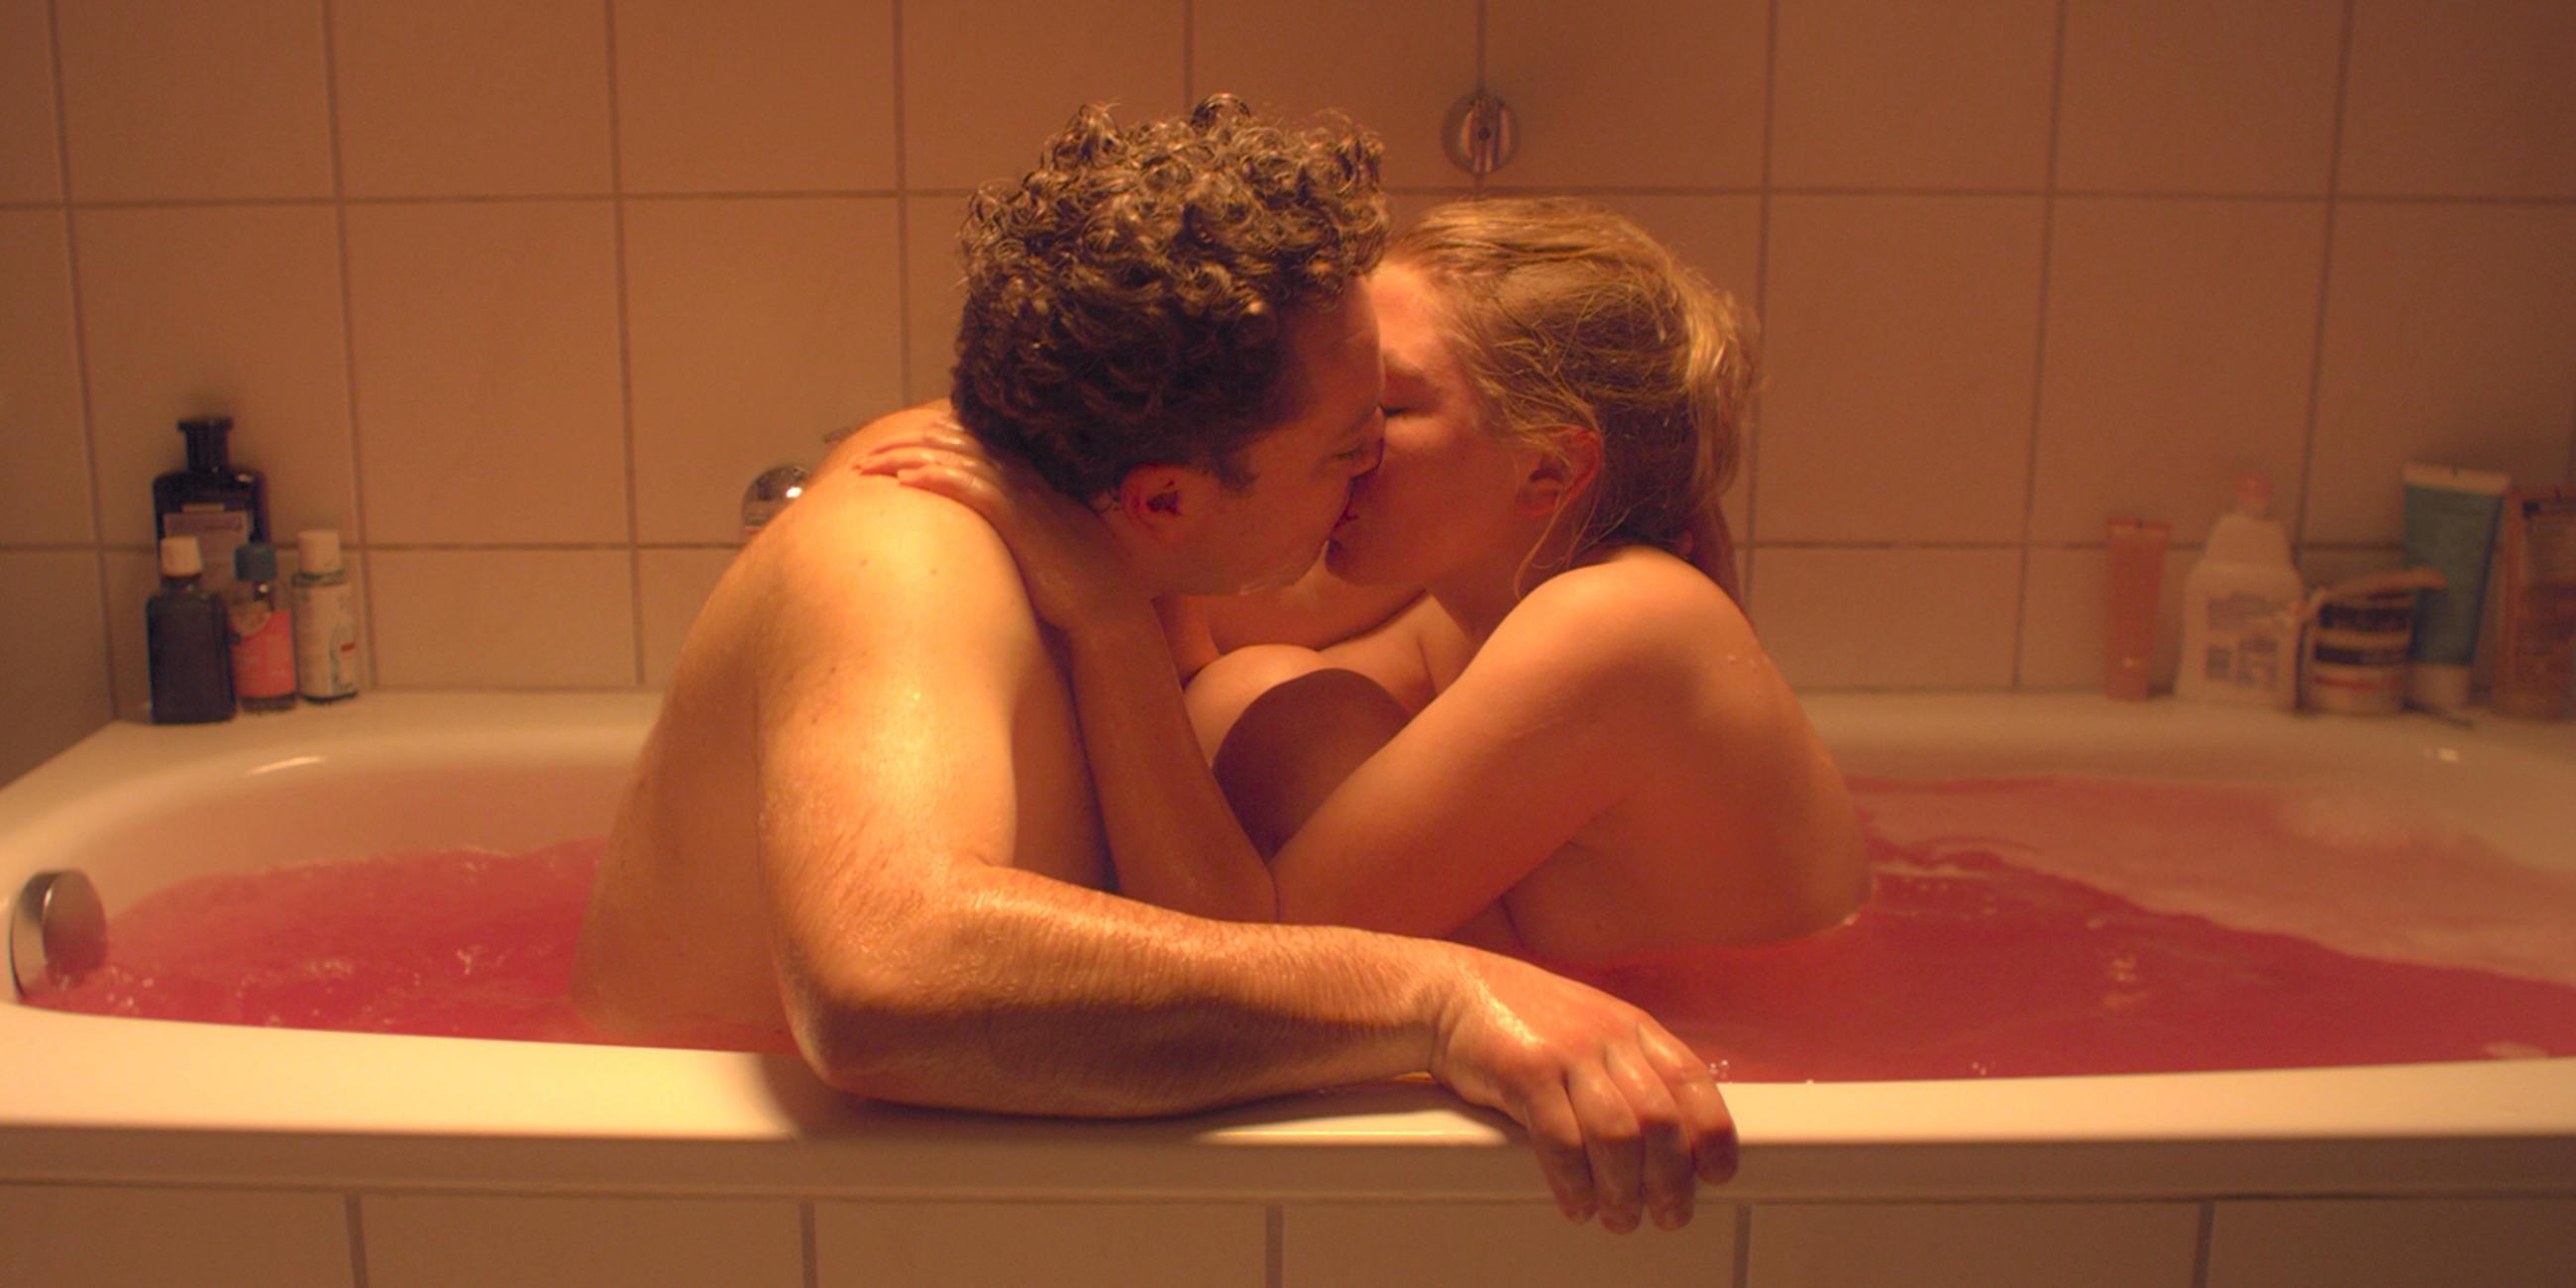 Jaksch (Jakob Schreier) und Hanna (Isabella Wolf) sitzen knutschend in der Badewanne